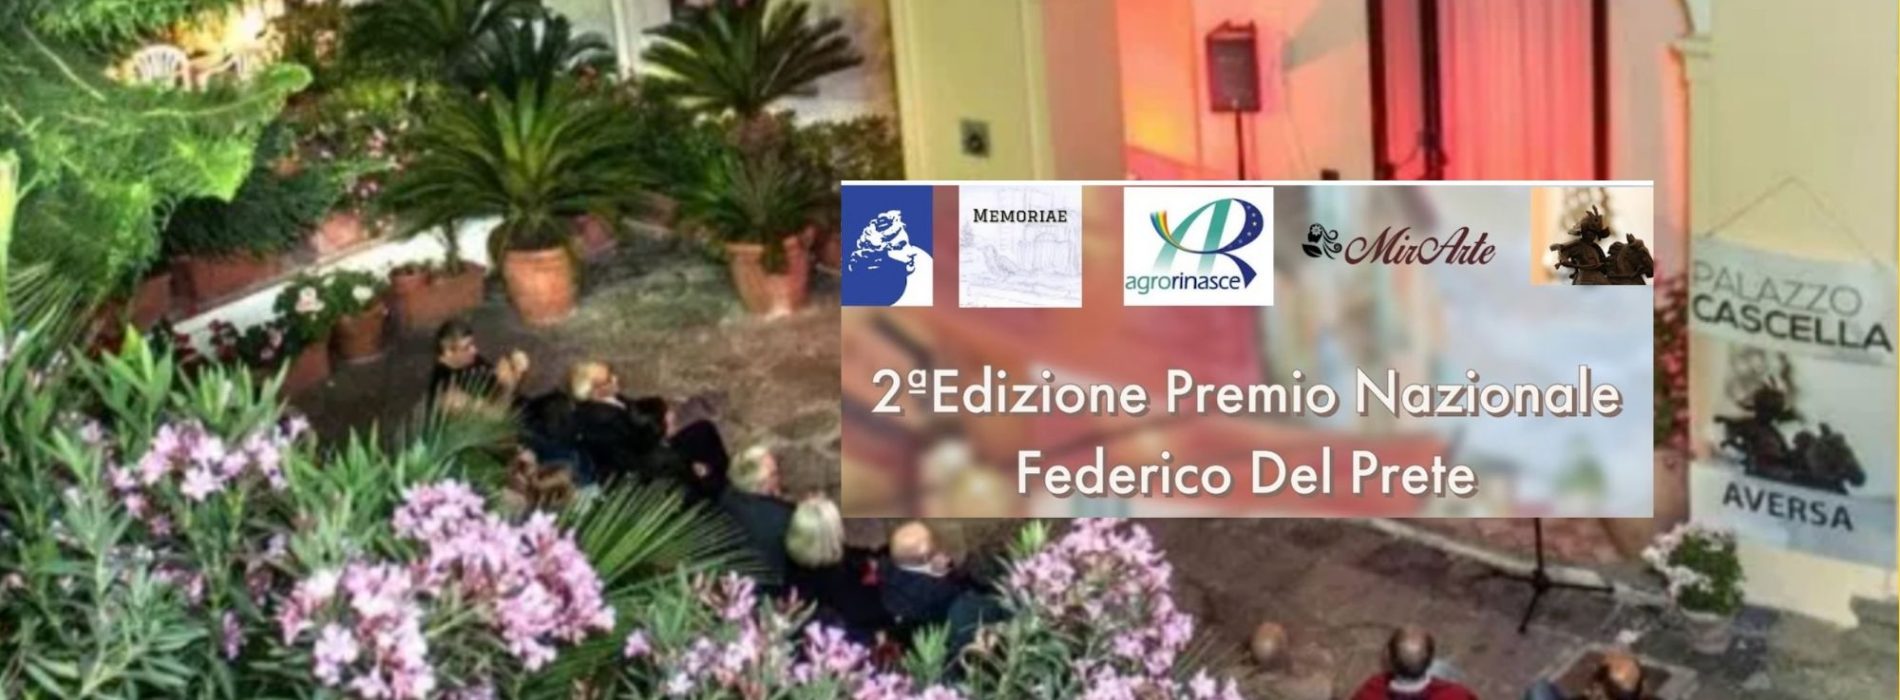 Aversa. Premio Federico Del Prete, a Palazzo Cascella l’evento